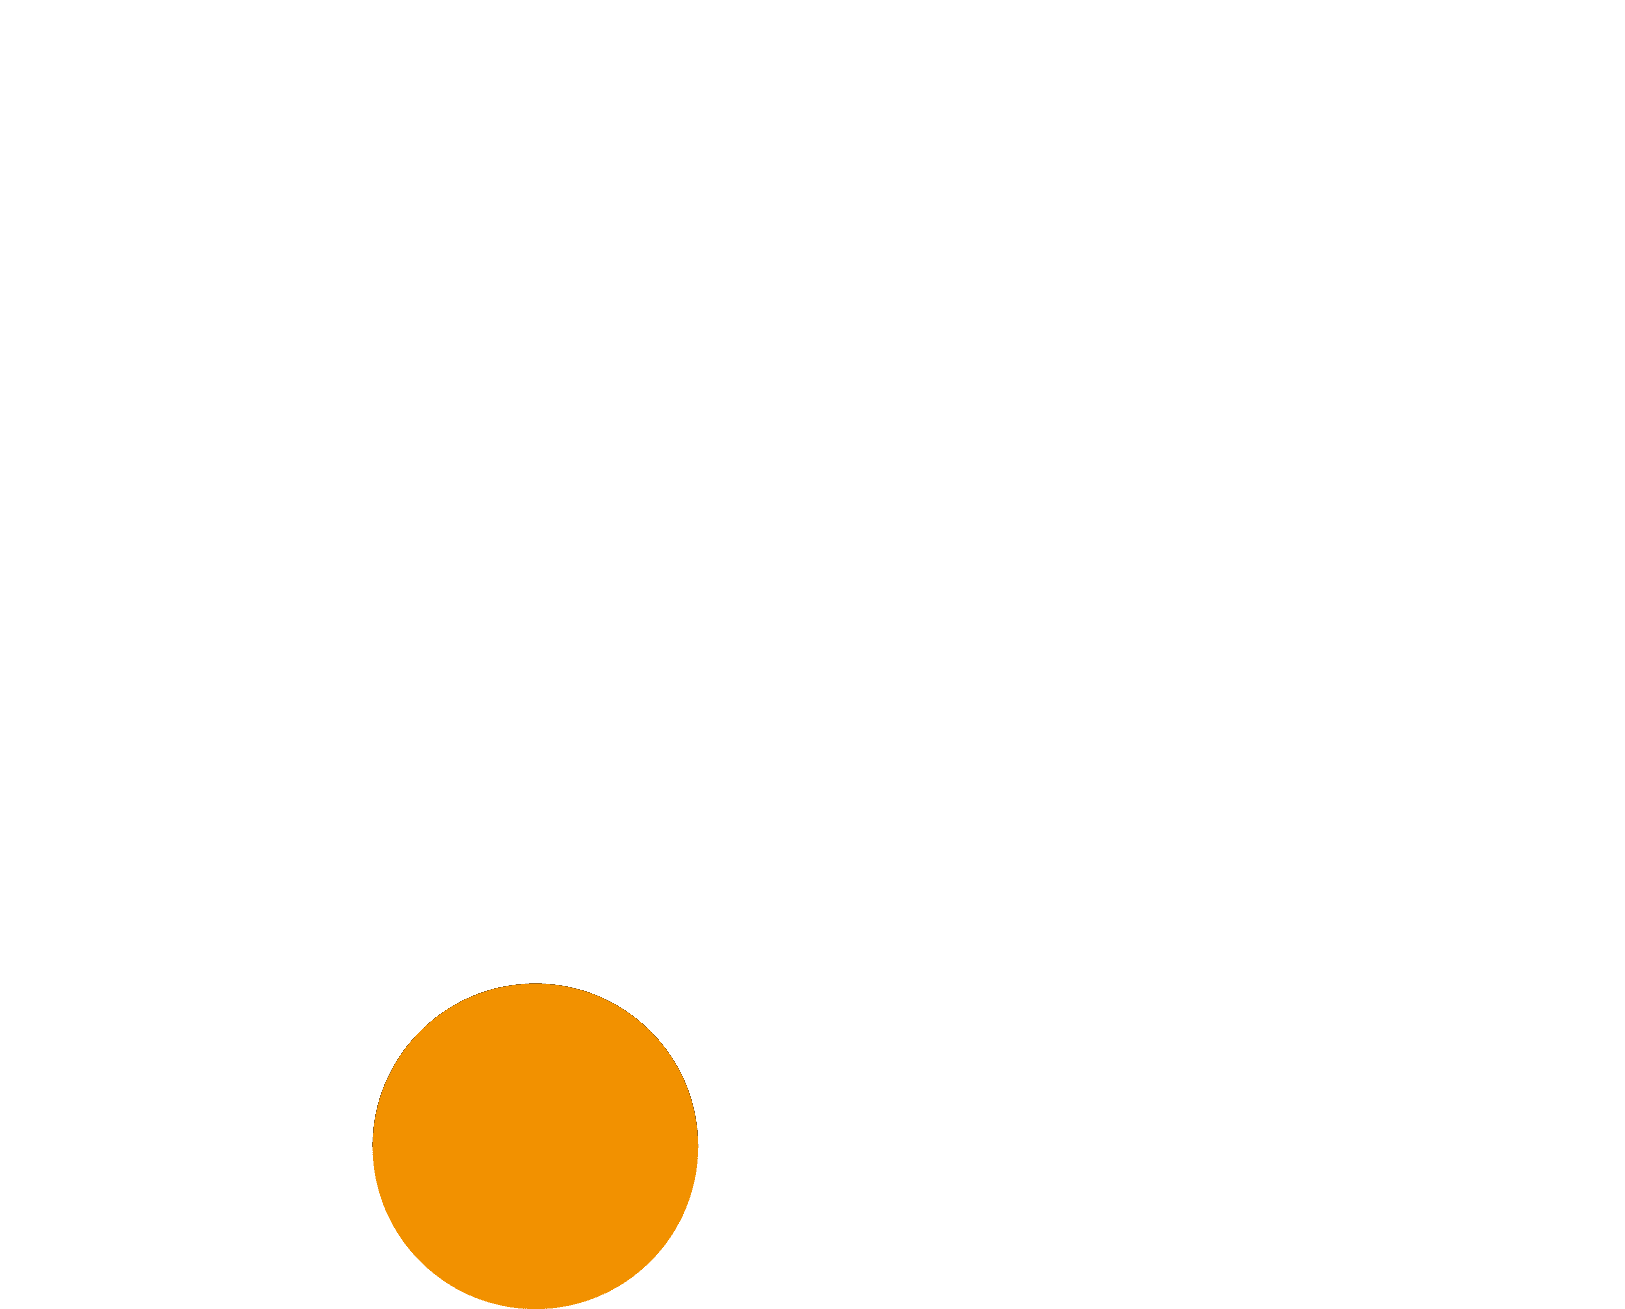 logo blanc et orange de tam architecture agence toulouse